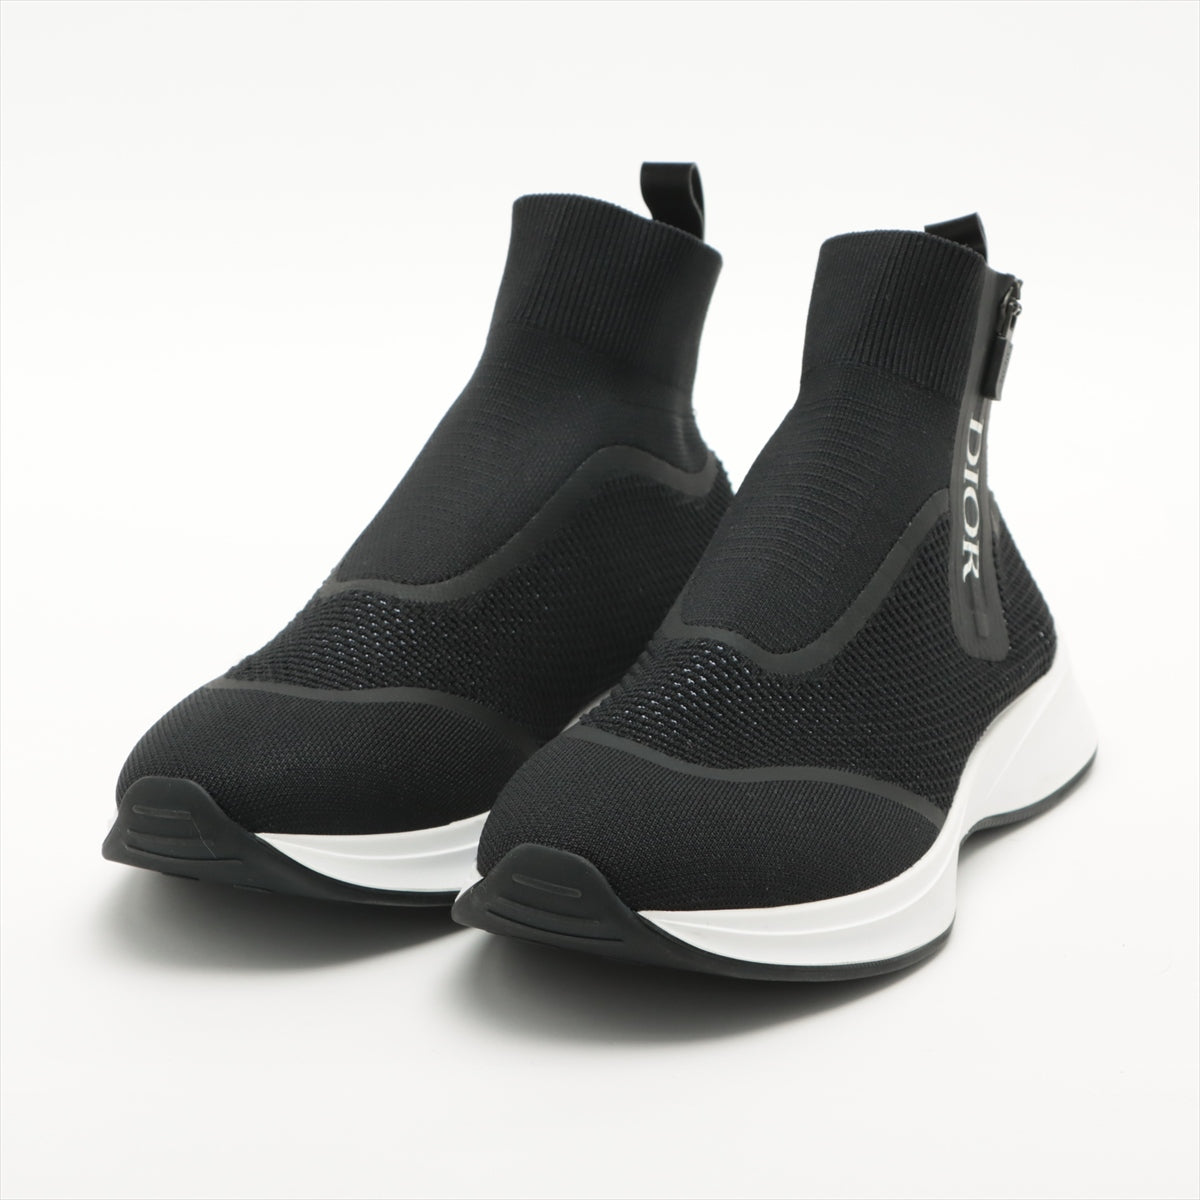 DIOR Fabric High-top Sneakers 41 Men's Black B25